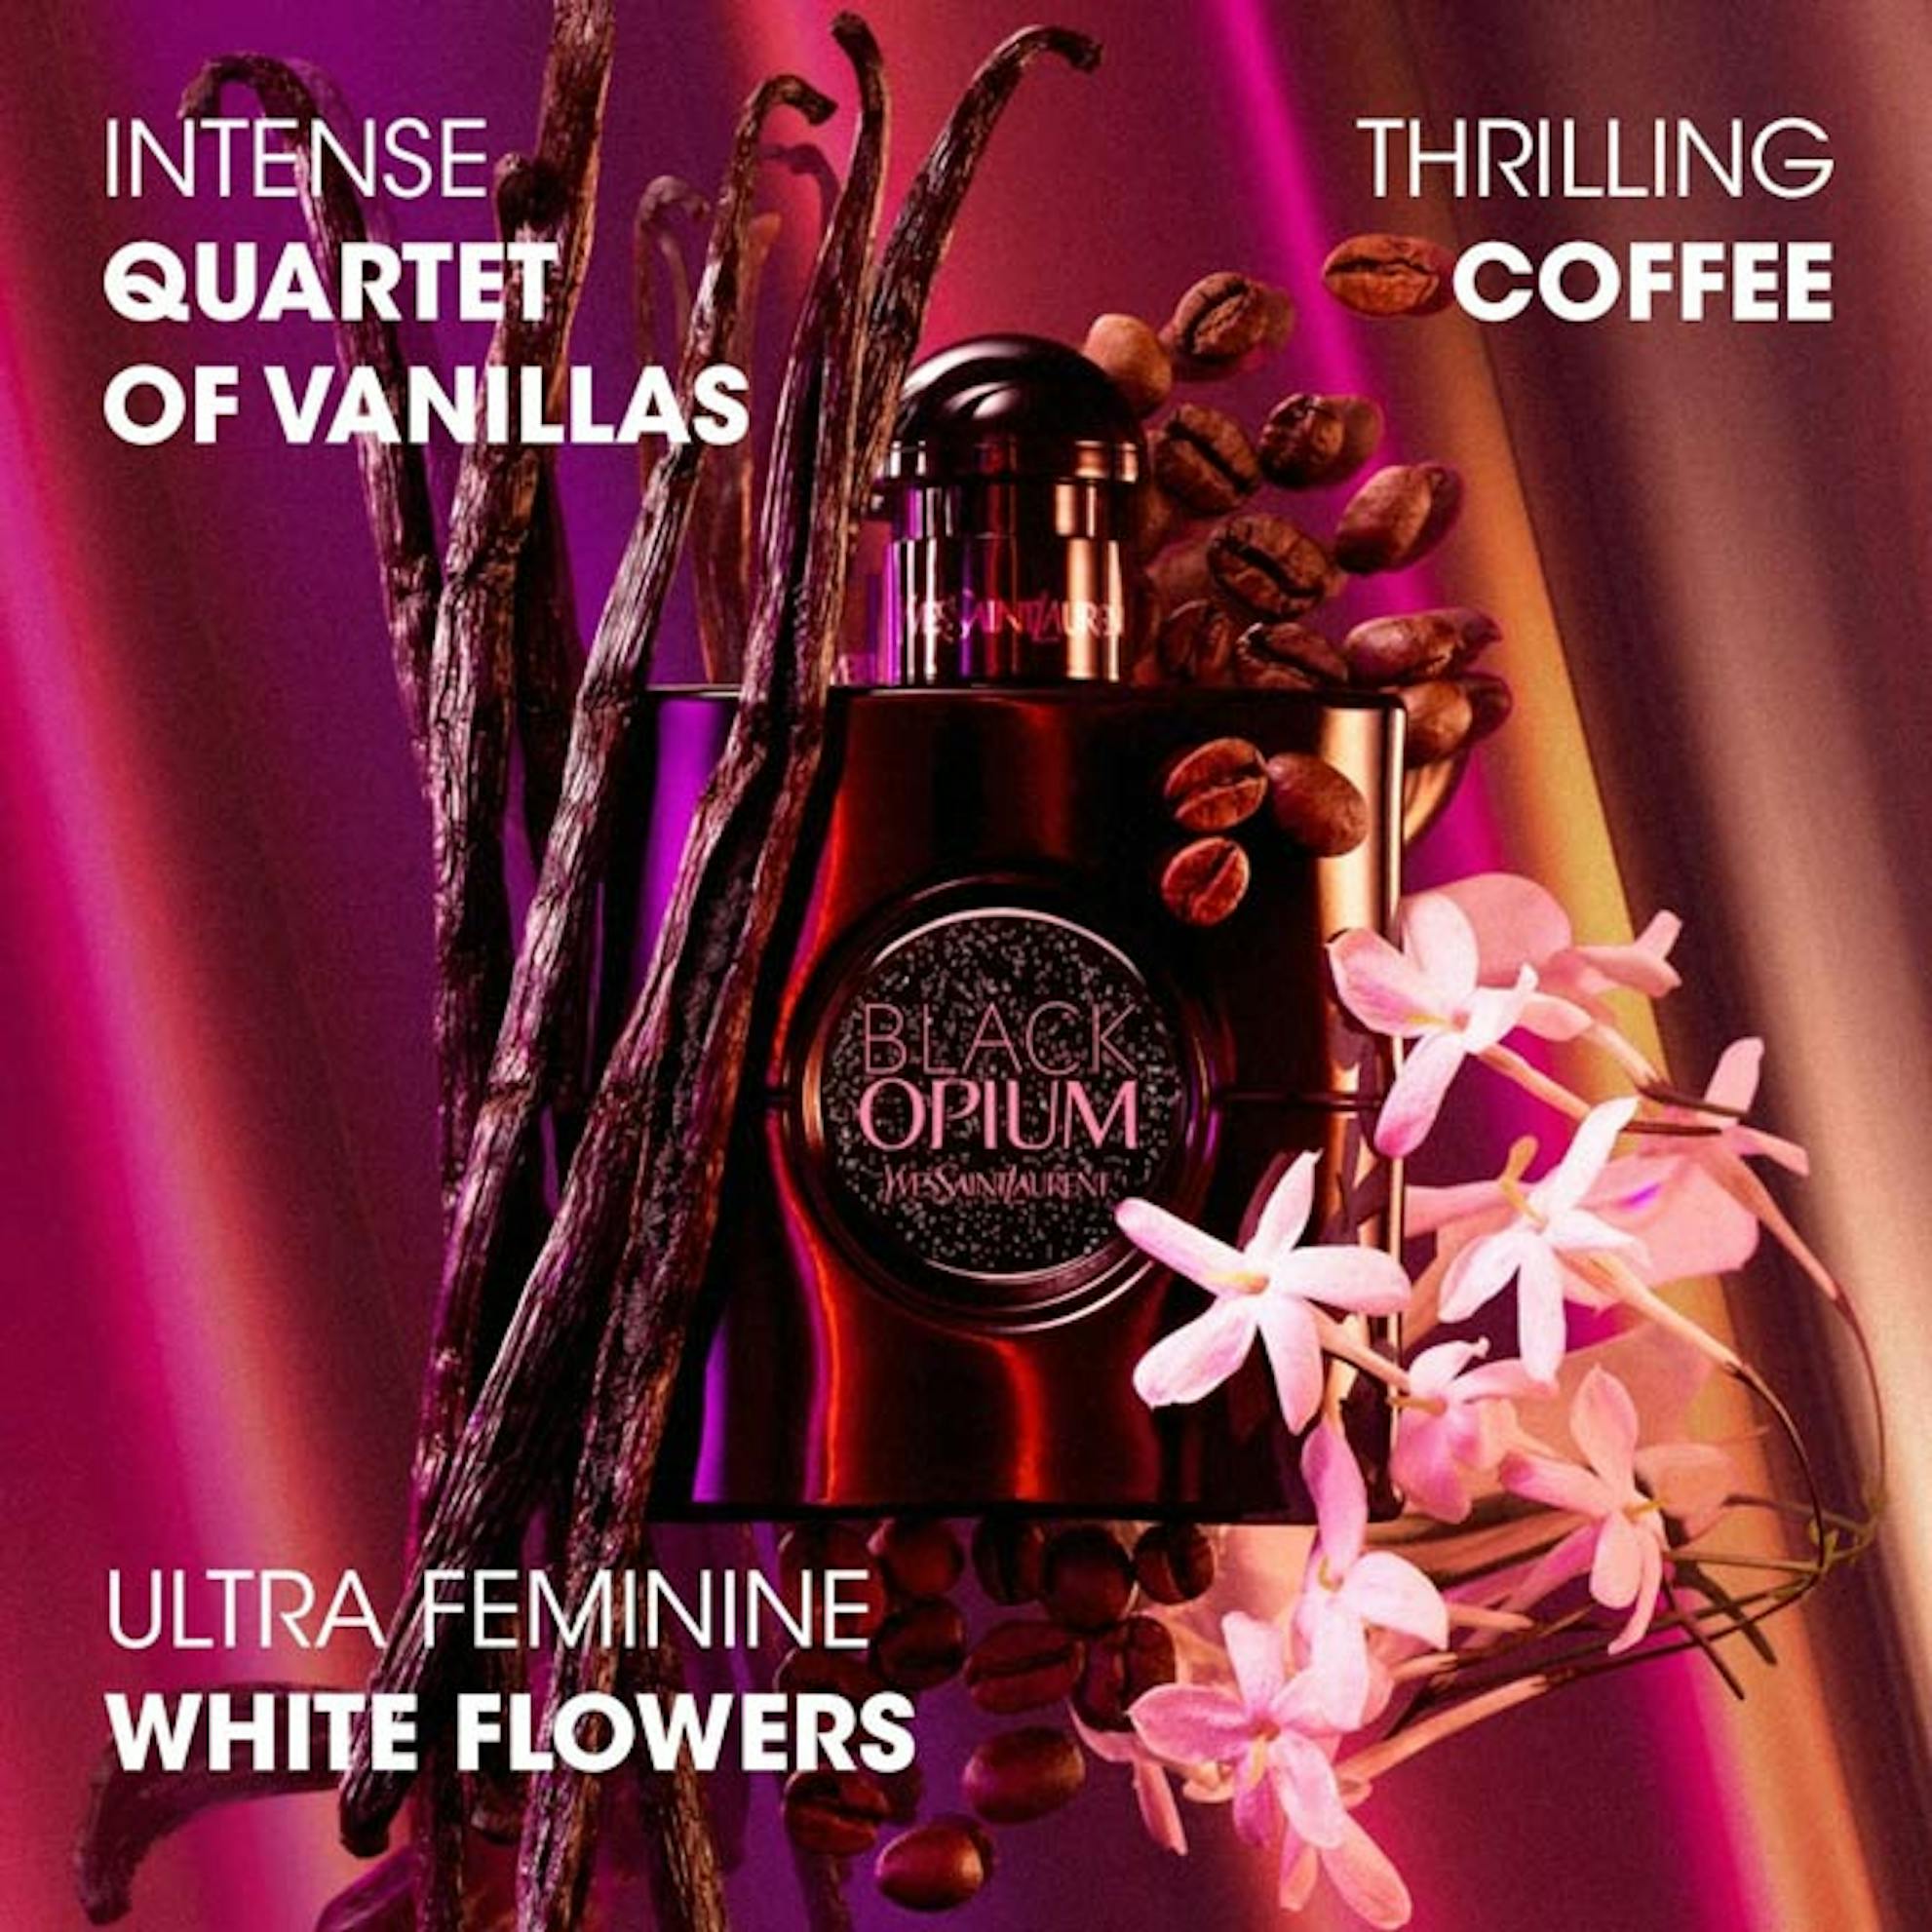 GIFT! Yves Saint Laurent Black Opium Le Parfum - Parfum (mini size